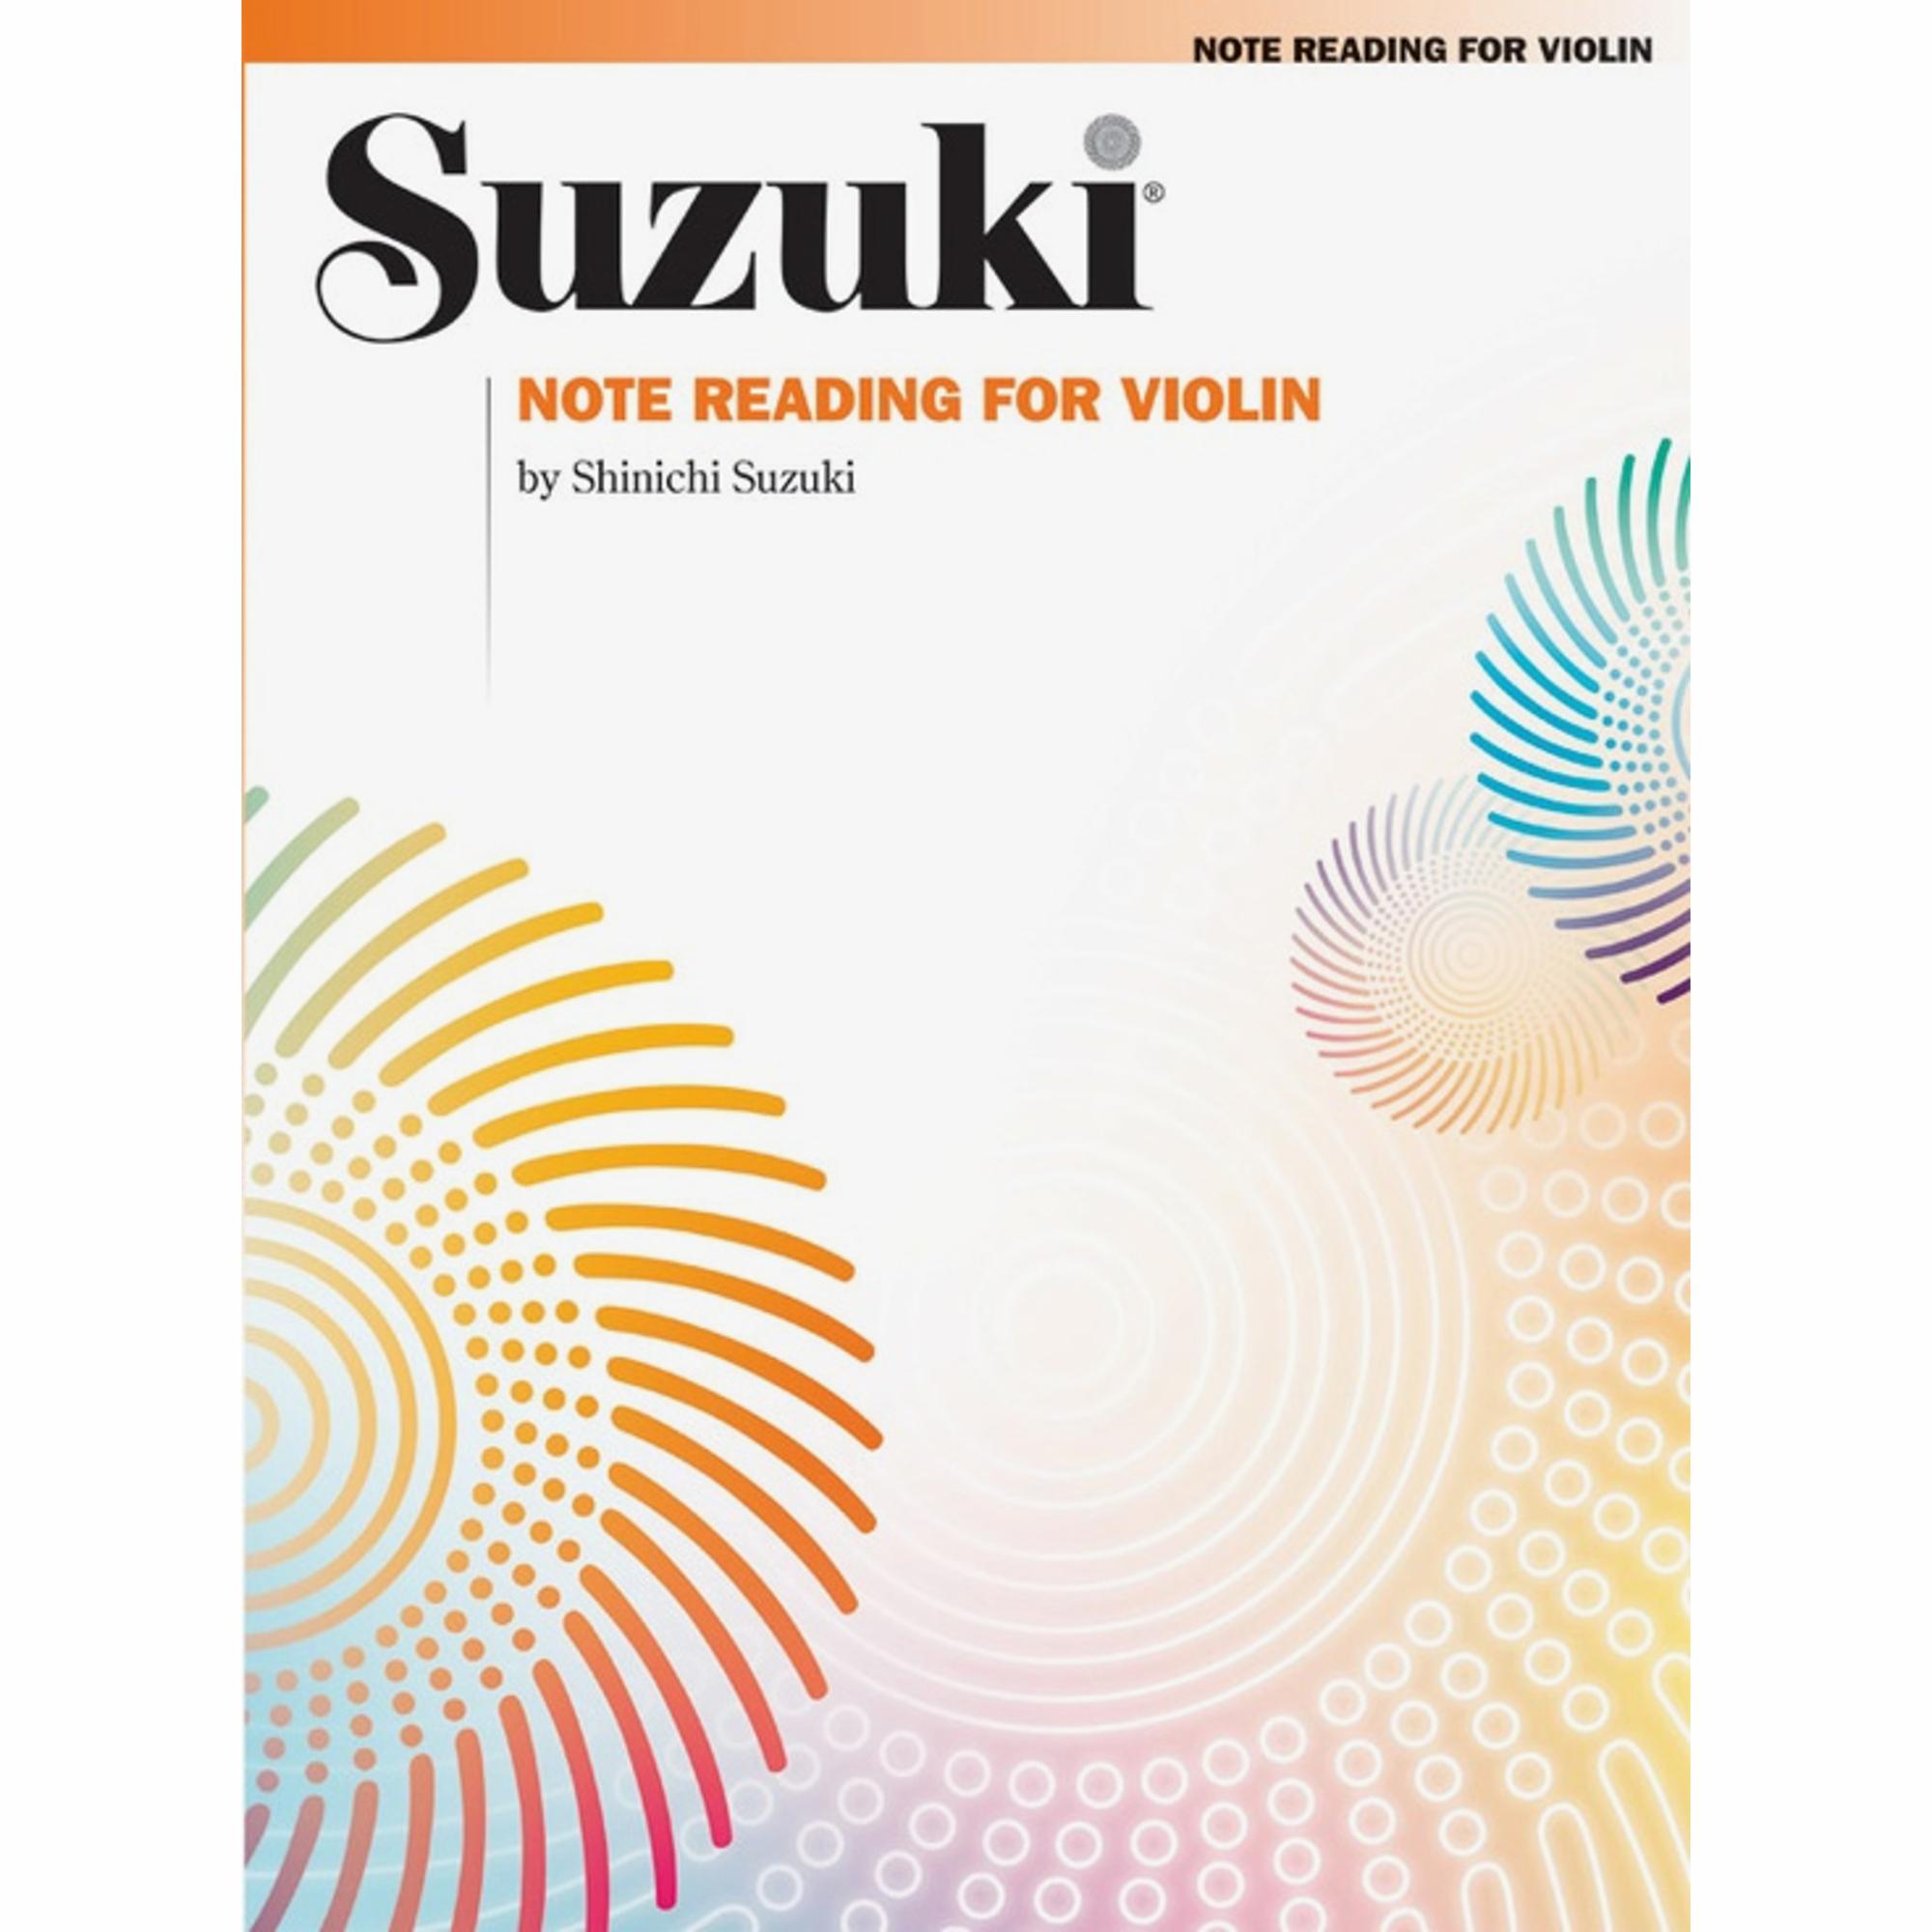 Suzuki: Note Reading for Violin